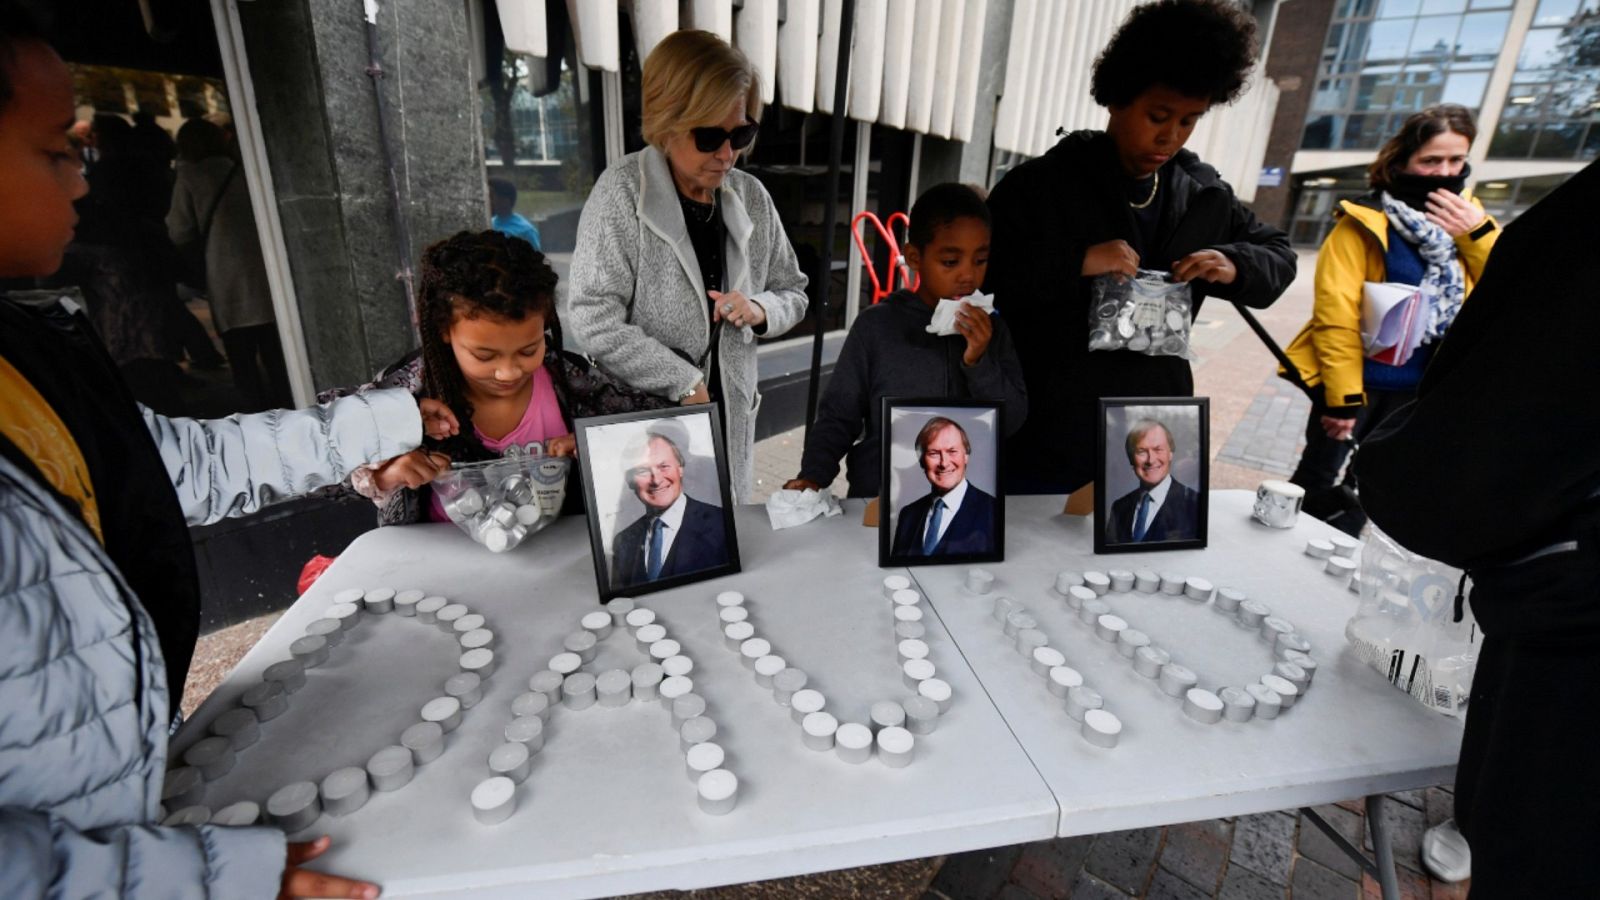 El nombre David escrito con velas durante una vigilia por el diputado británico David Amess, asesinado a puñaladas durante una reunión con los electores.